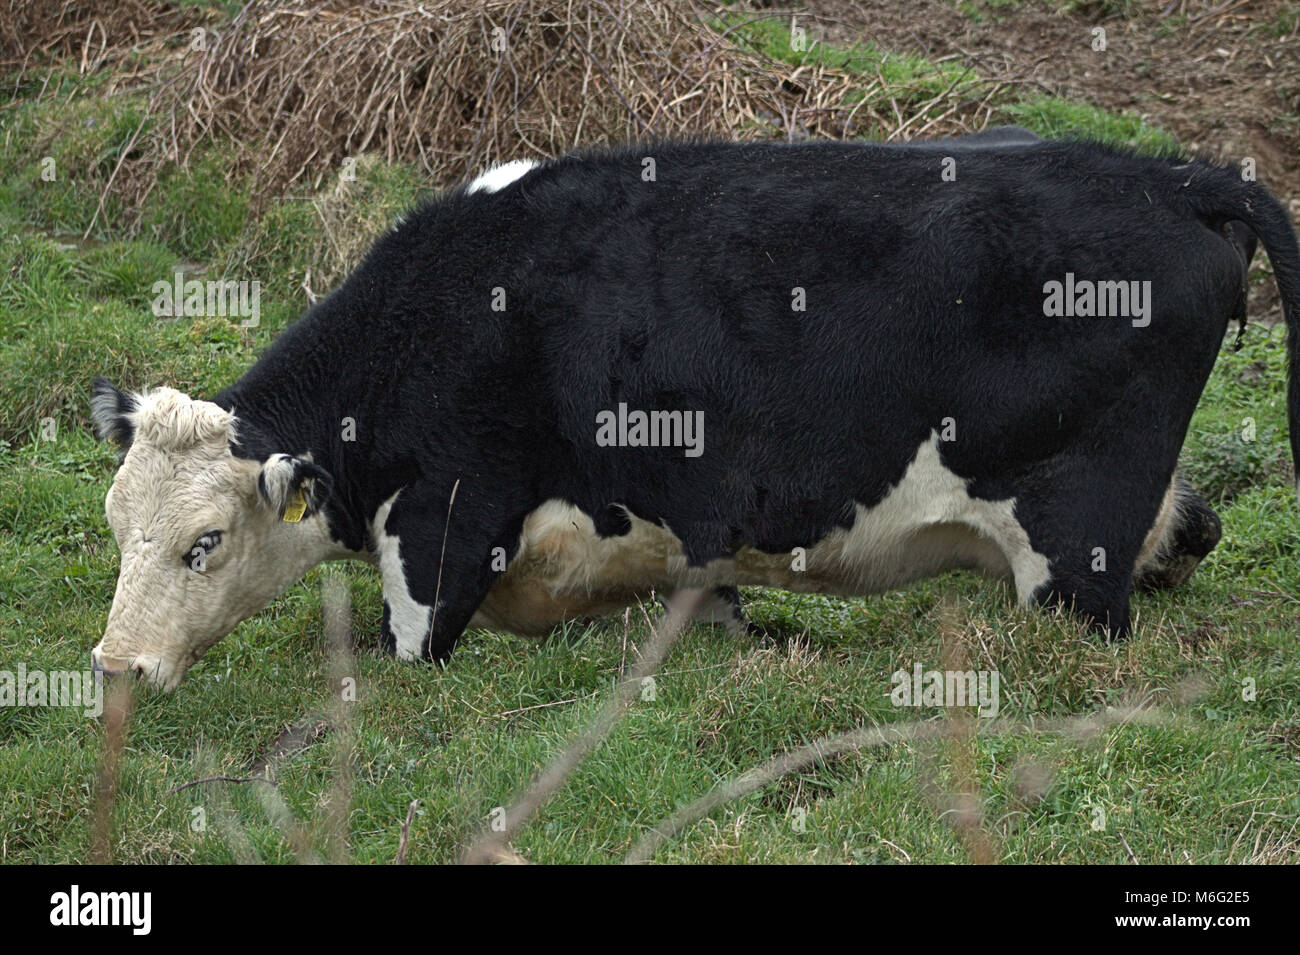 La mucca era venuto vicino a una parte paludosa del campo per bere e rimasto bloccato veloce. Foto Stock